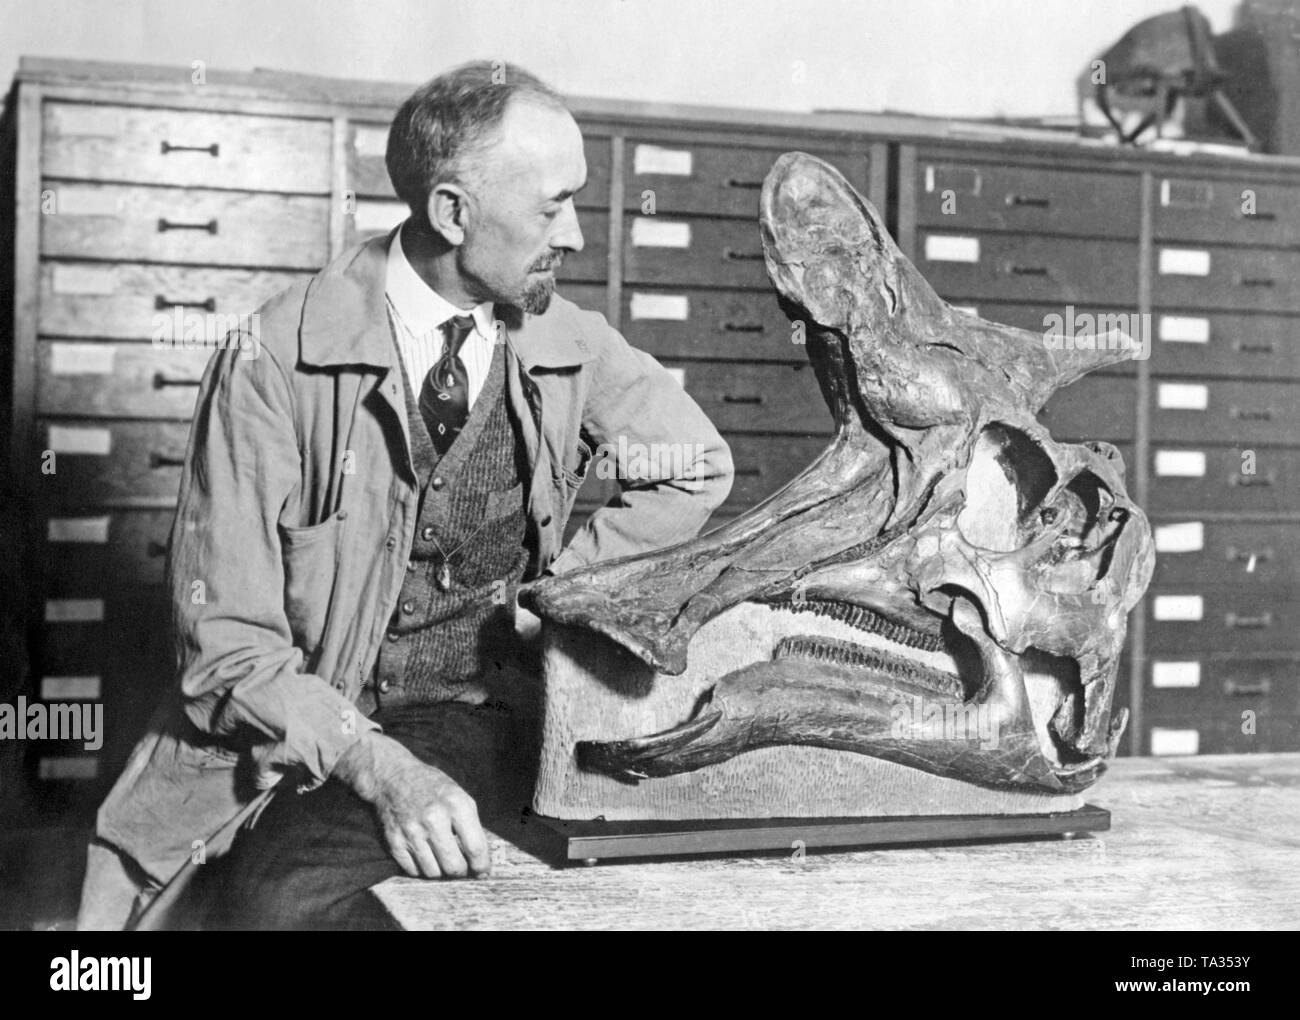 Paul Miller, Kurator der Walker Museum in Chicago, untersucht den Schädel eines Duck-billed Dinosaurier oder Hadrosaur. Der Schädel wurde in Kanada gefunden. Der wissenschaftliche Name der Dinosaurier ist Lambeosaurinae und lebte im heutigen Nordamerika ein paar Millionen Jahren. Dies war eine seltene finden. Stockfoto